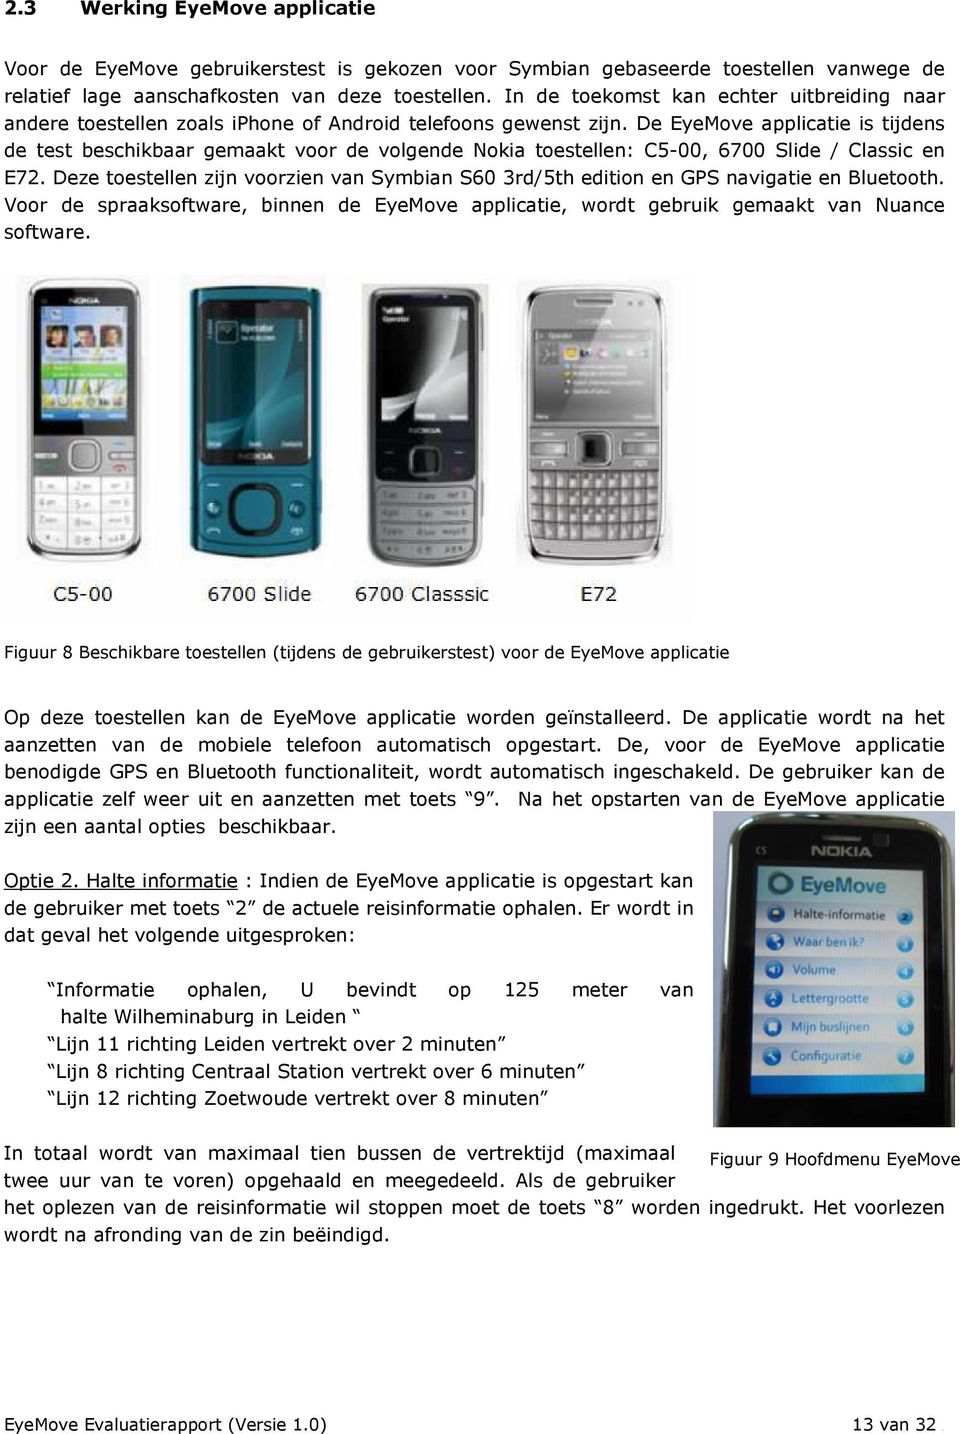 De EyeMove applicatie is tijdens de test beschikbaar gemaakt voor de volgende Nokia toestellen: C5-00, 6700 Slide / Classic en E72.